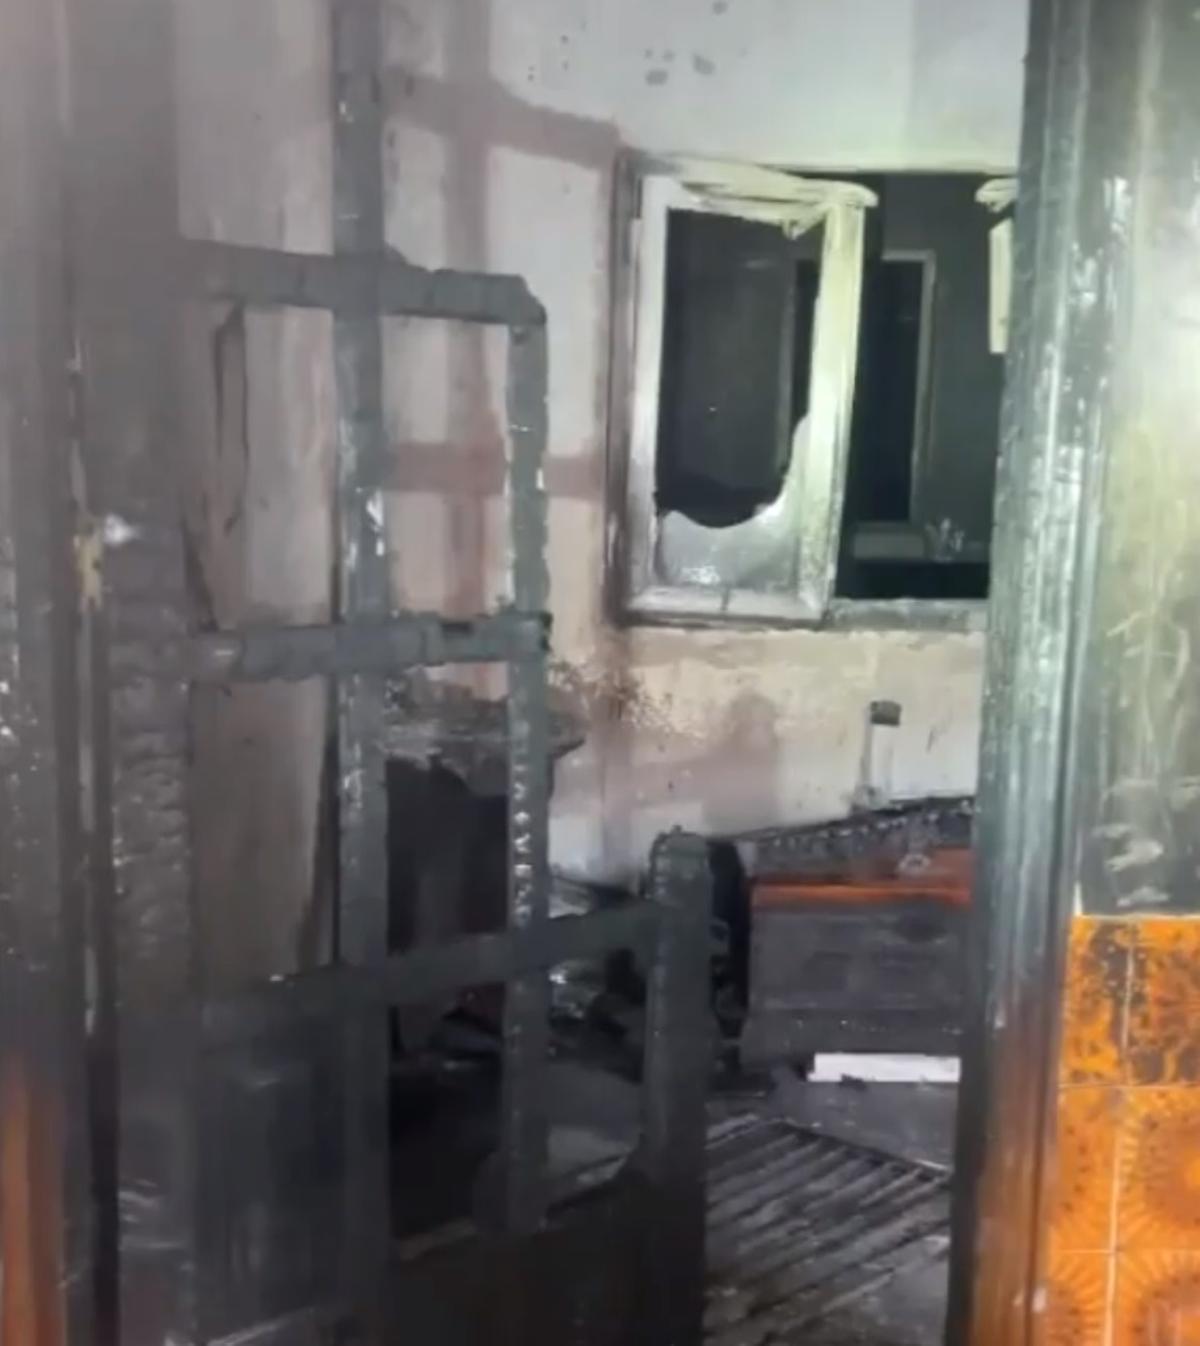 Interior de la vivienda incendiada en Arucas, completamente calcinada